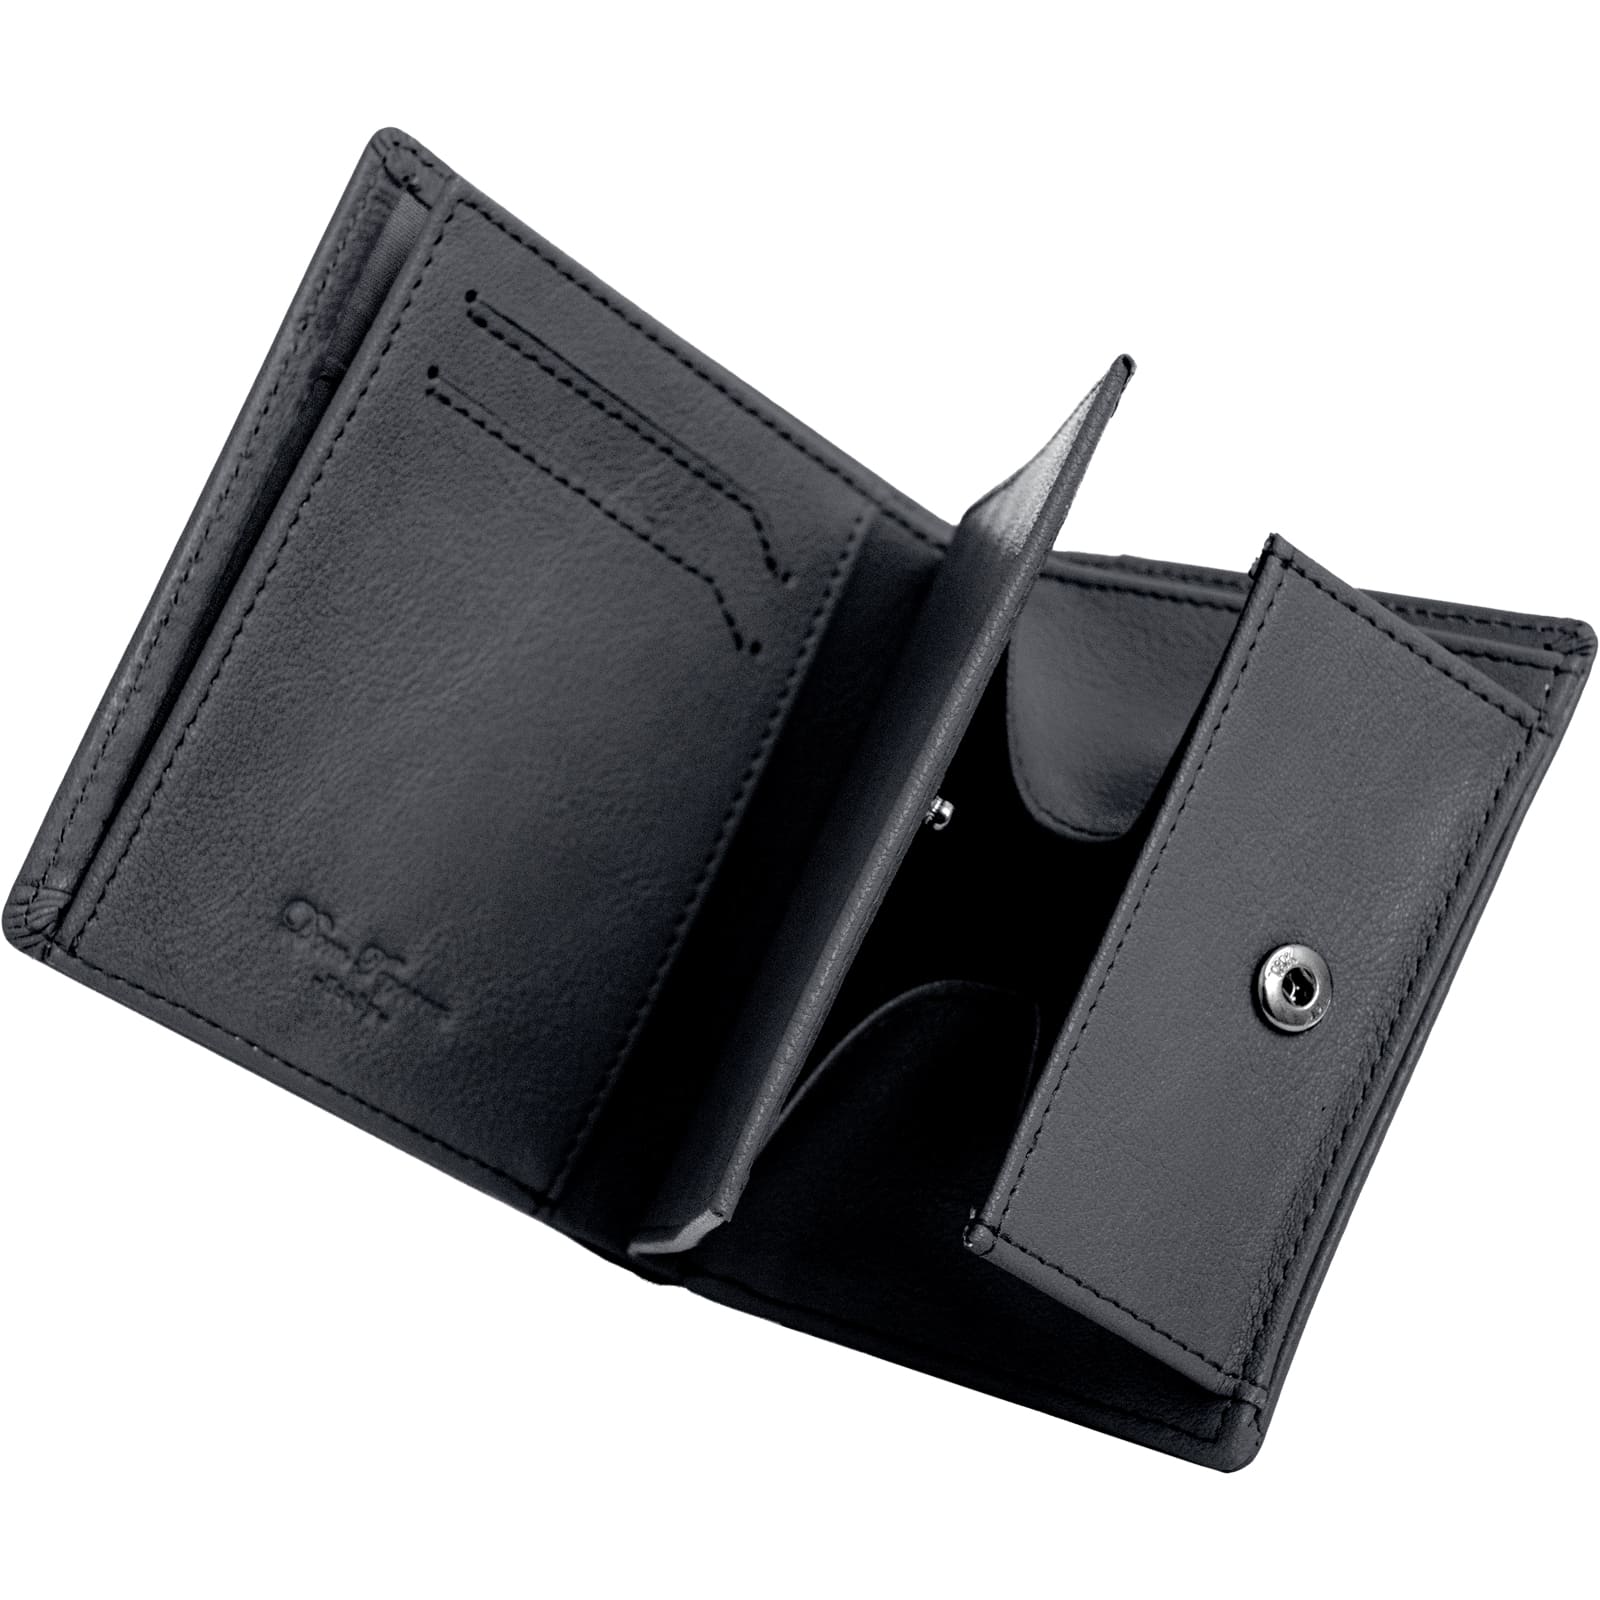 二つ折り 薄型財布 イタリアンレザー 本革 多ポケット ミニ財布 小さい